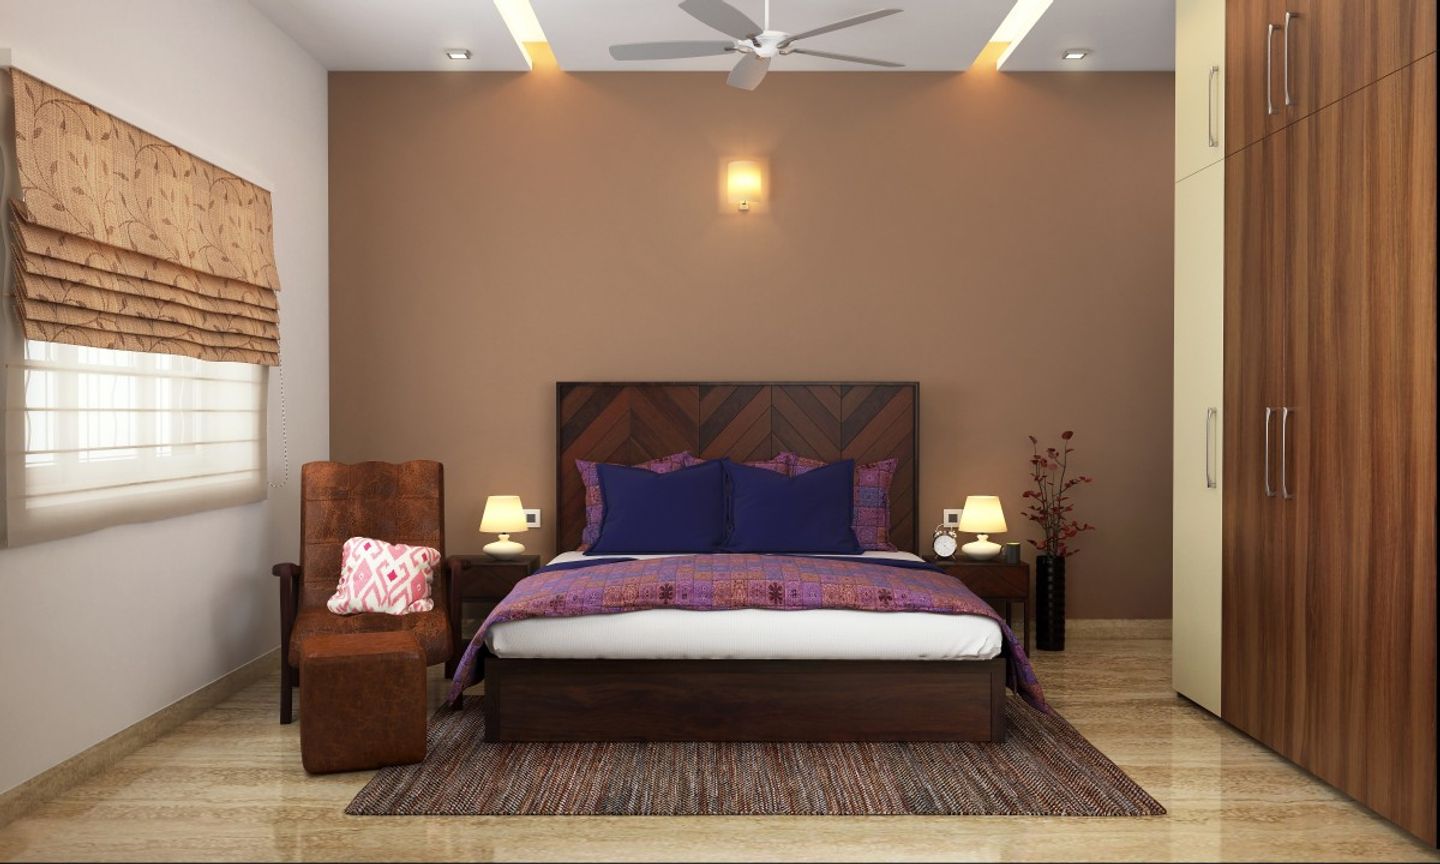 Modern Guest Bedroom Design With Bedroom Wallpaint